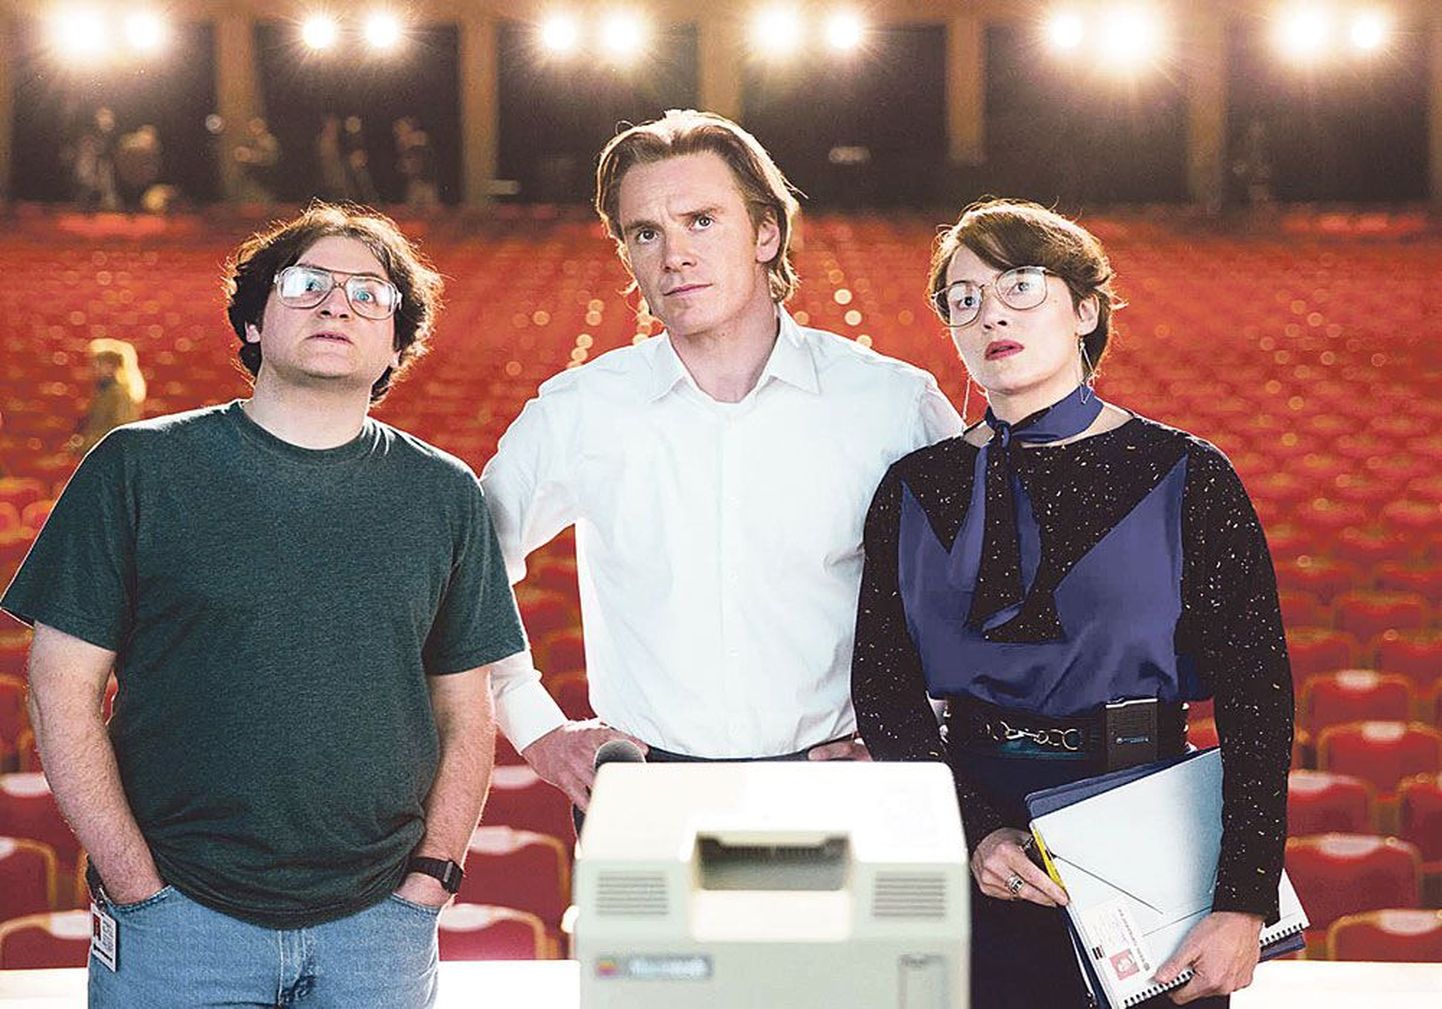 Стив Джобс (Майкл Фассбендер, посередине) с квазибратом Херцфельдом (Майкл Сталберг) и квазиженой Джоанной Хоффман (Кейт Уинслет) перед компьютером Macintosh.